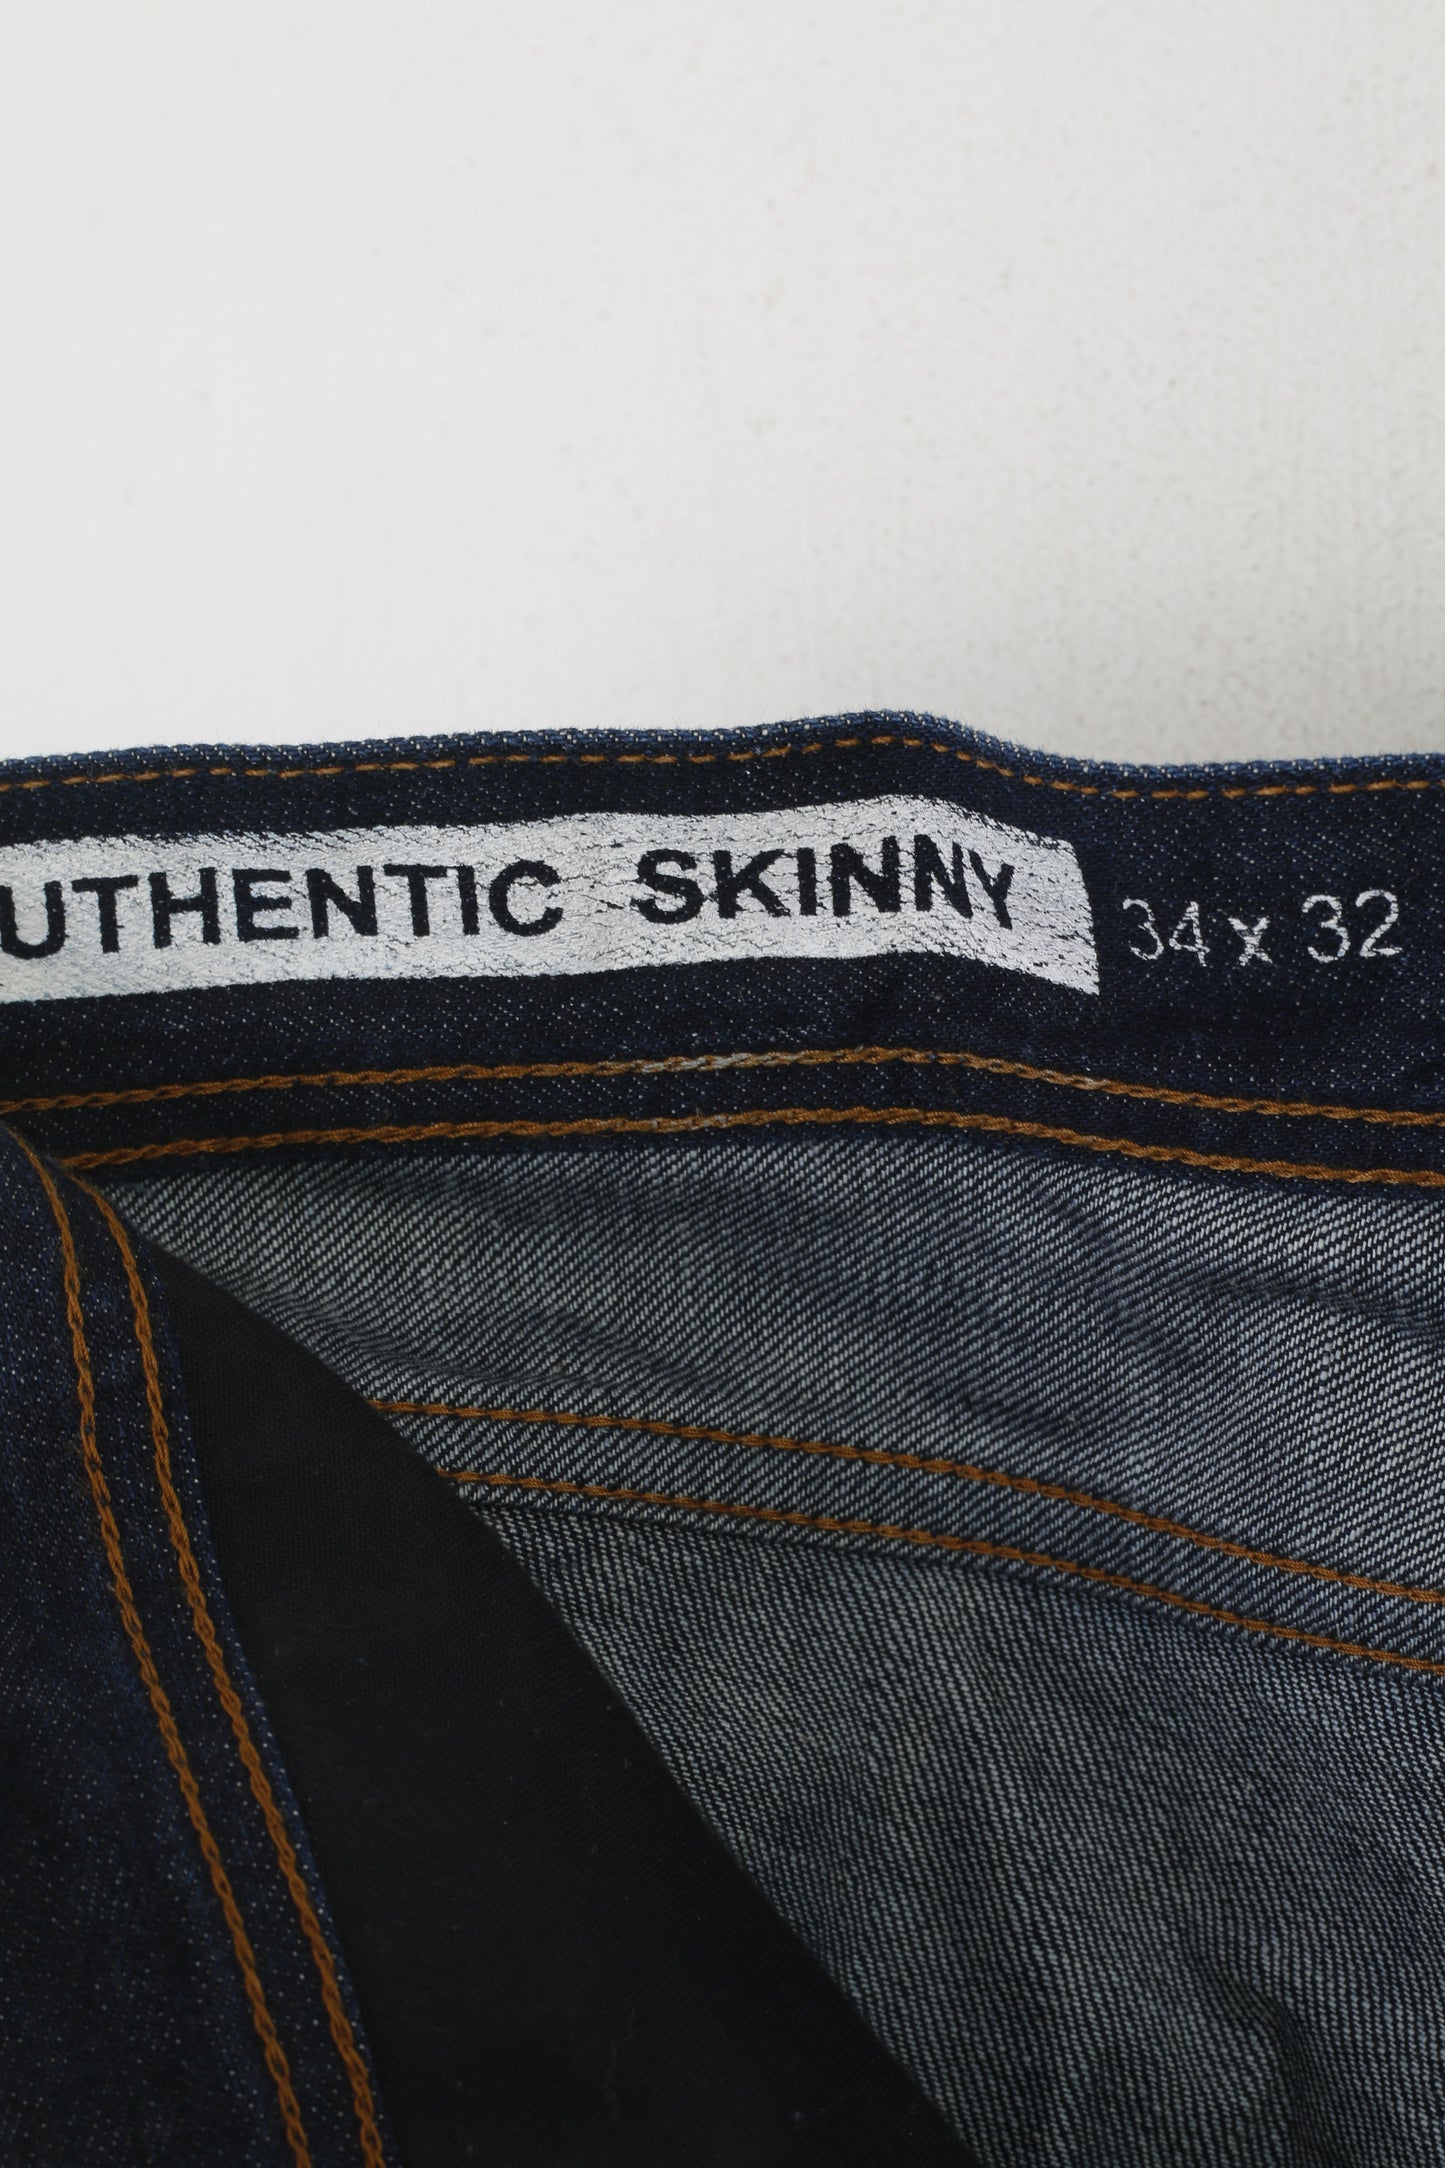 Gap Men 34 Jeans Trousers Navy Denim Cotton Authentic Skinny Pants